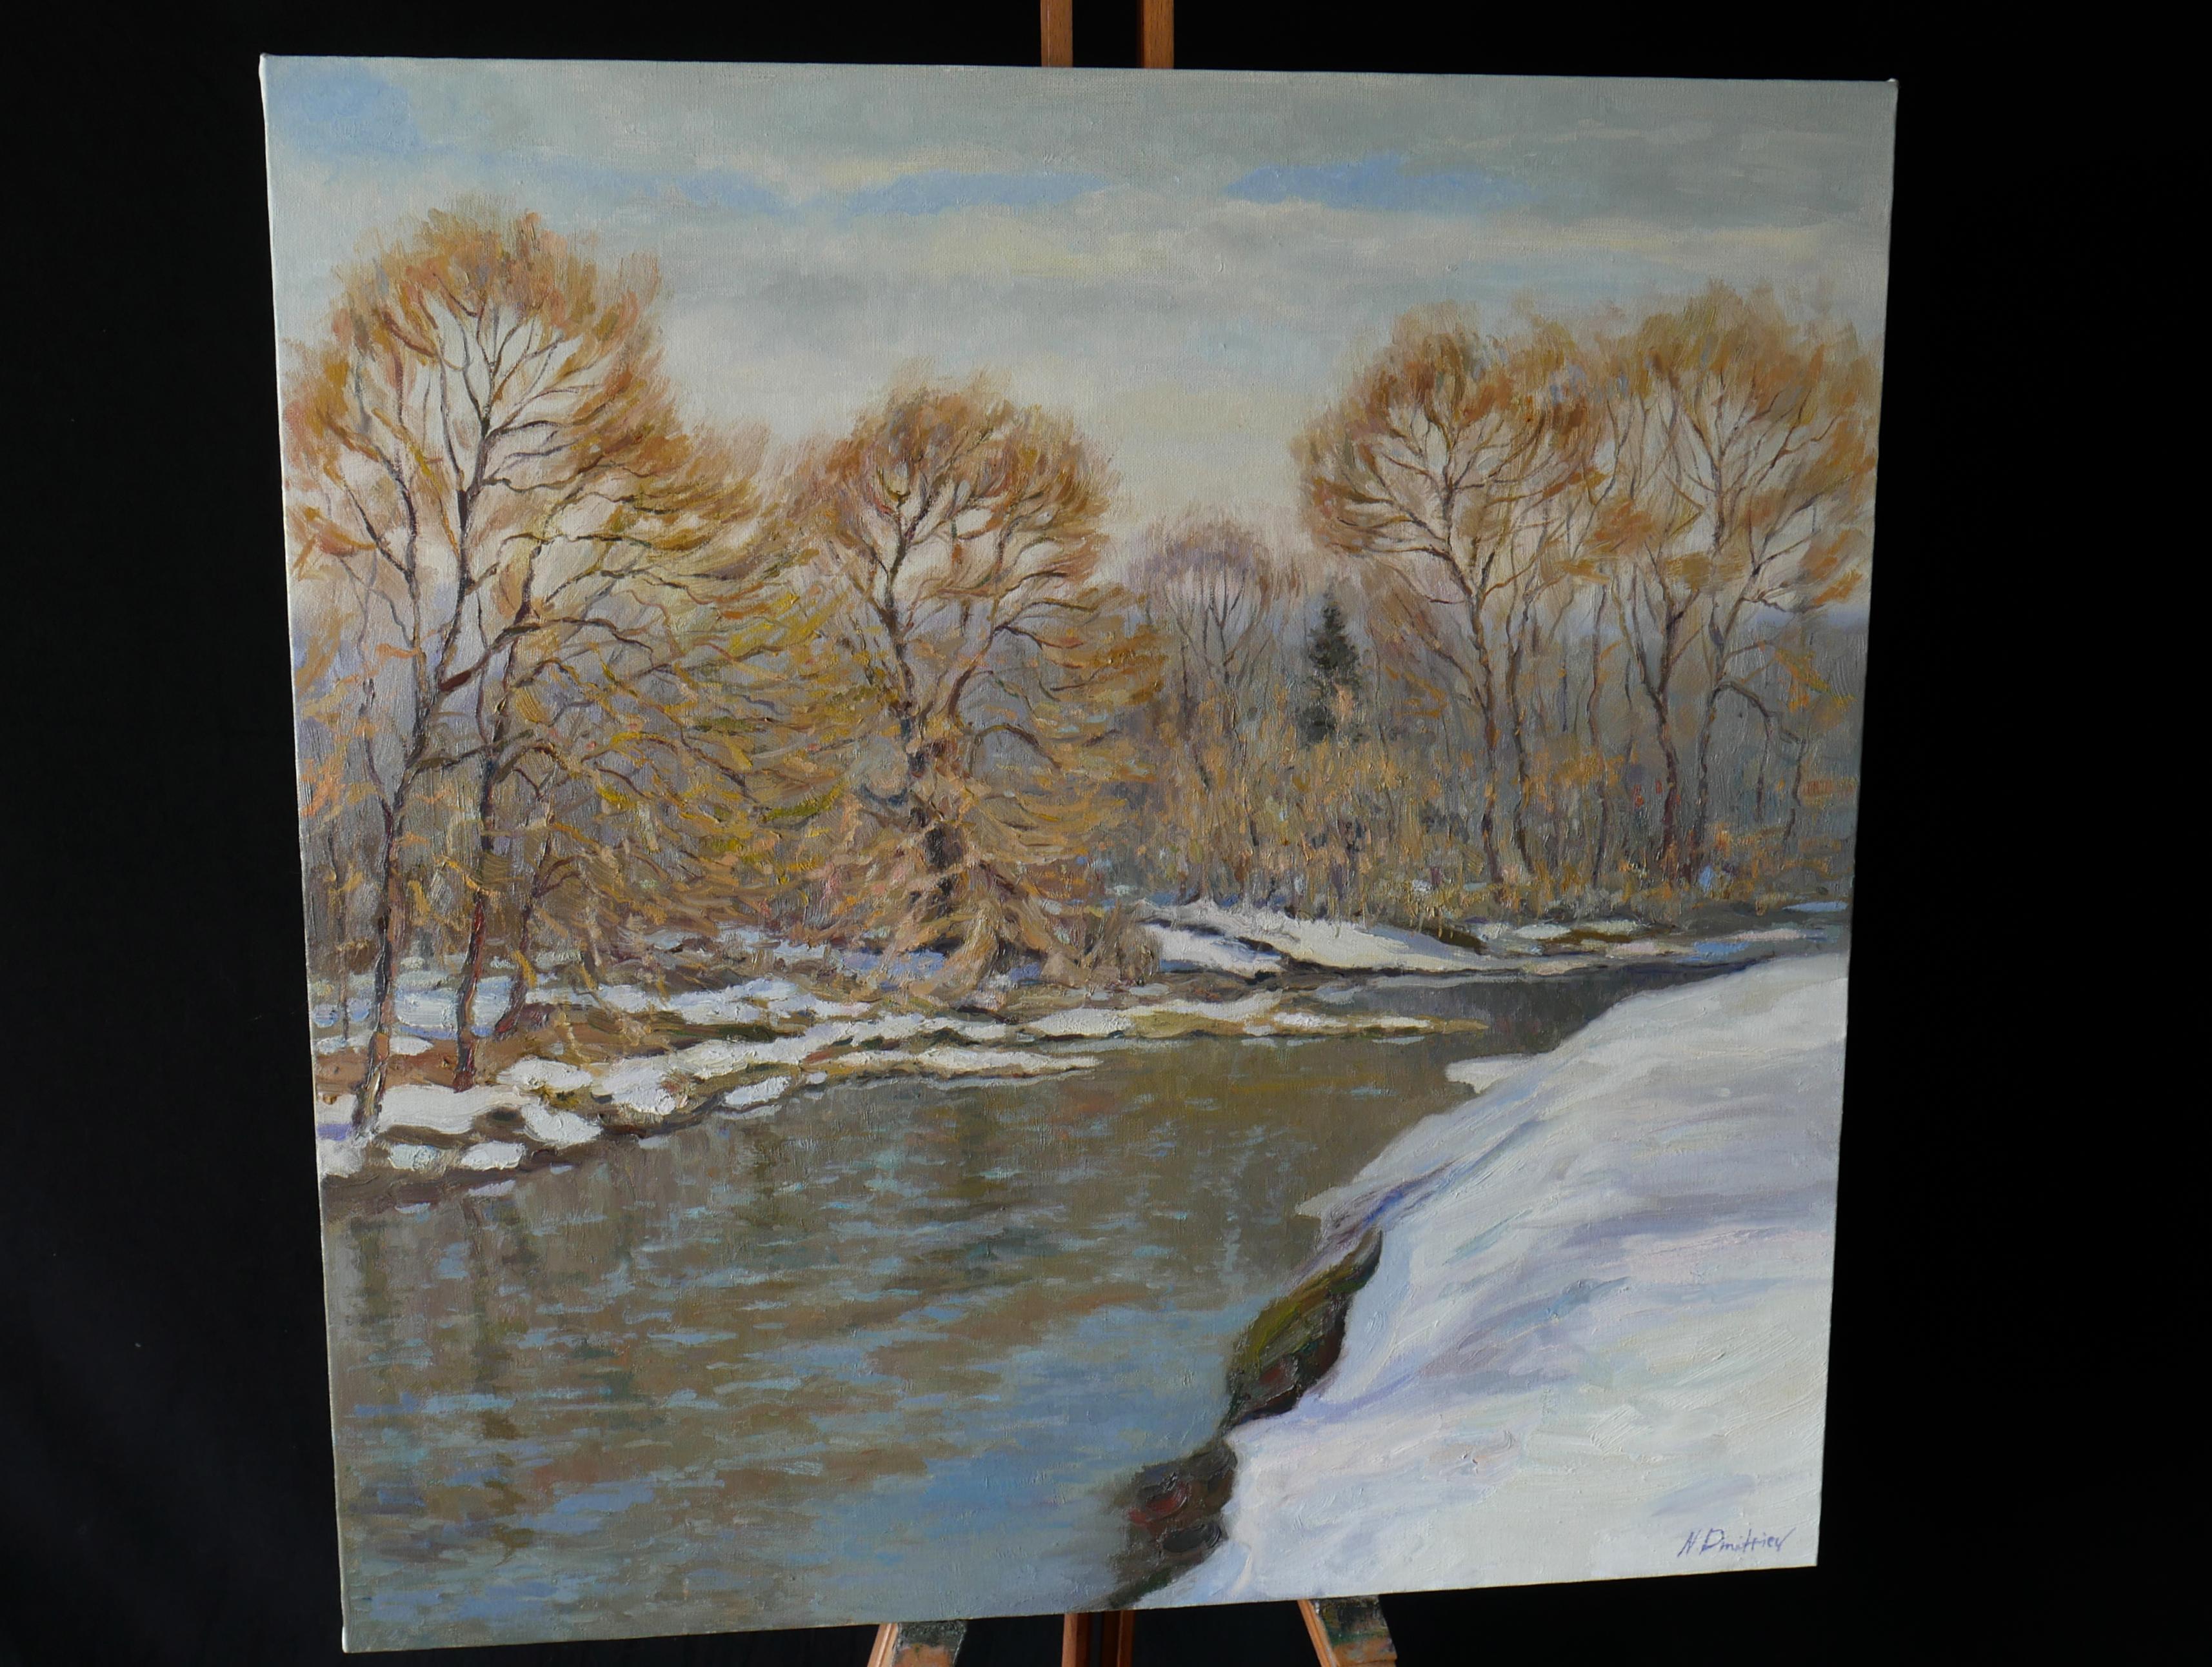 La lumière du printemps - peinture de paysage fluvial - Impressionnisme Painting par Nikolay Dmitriev